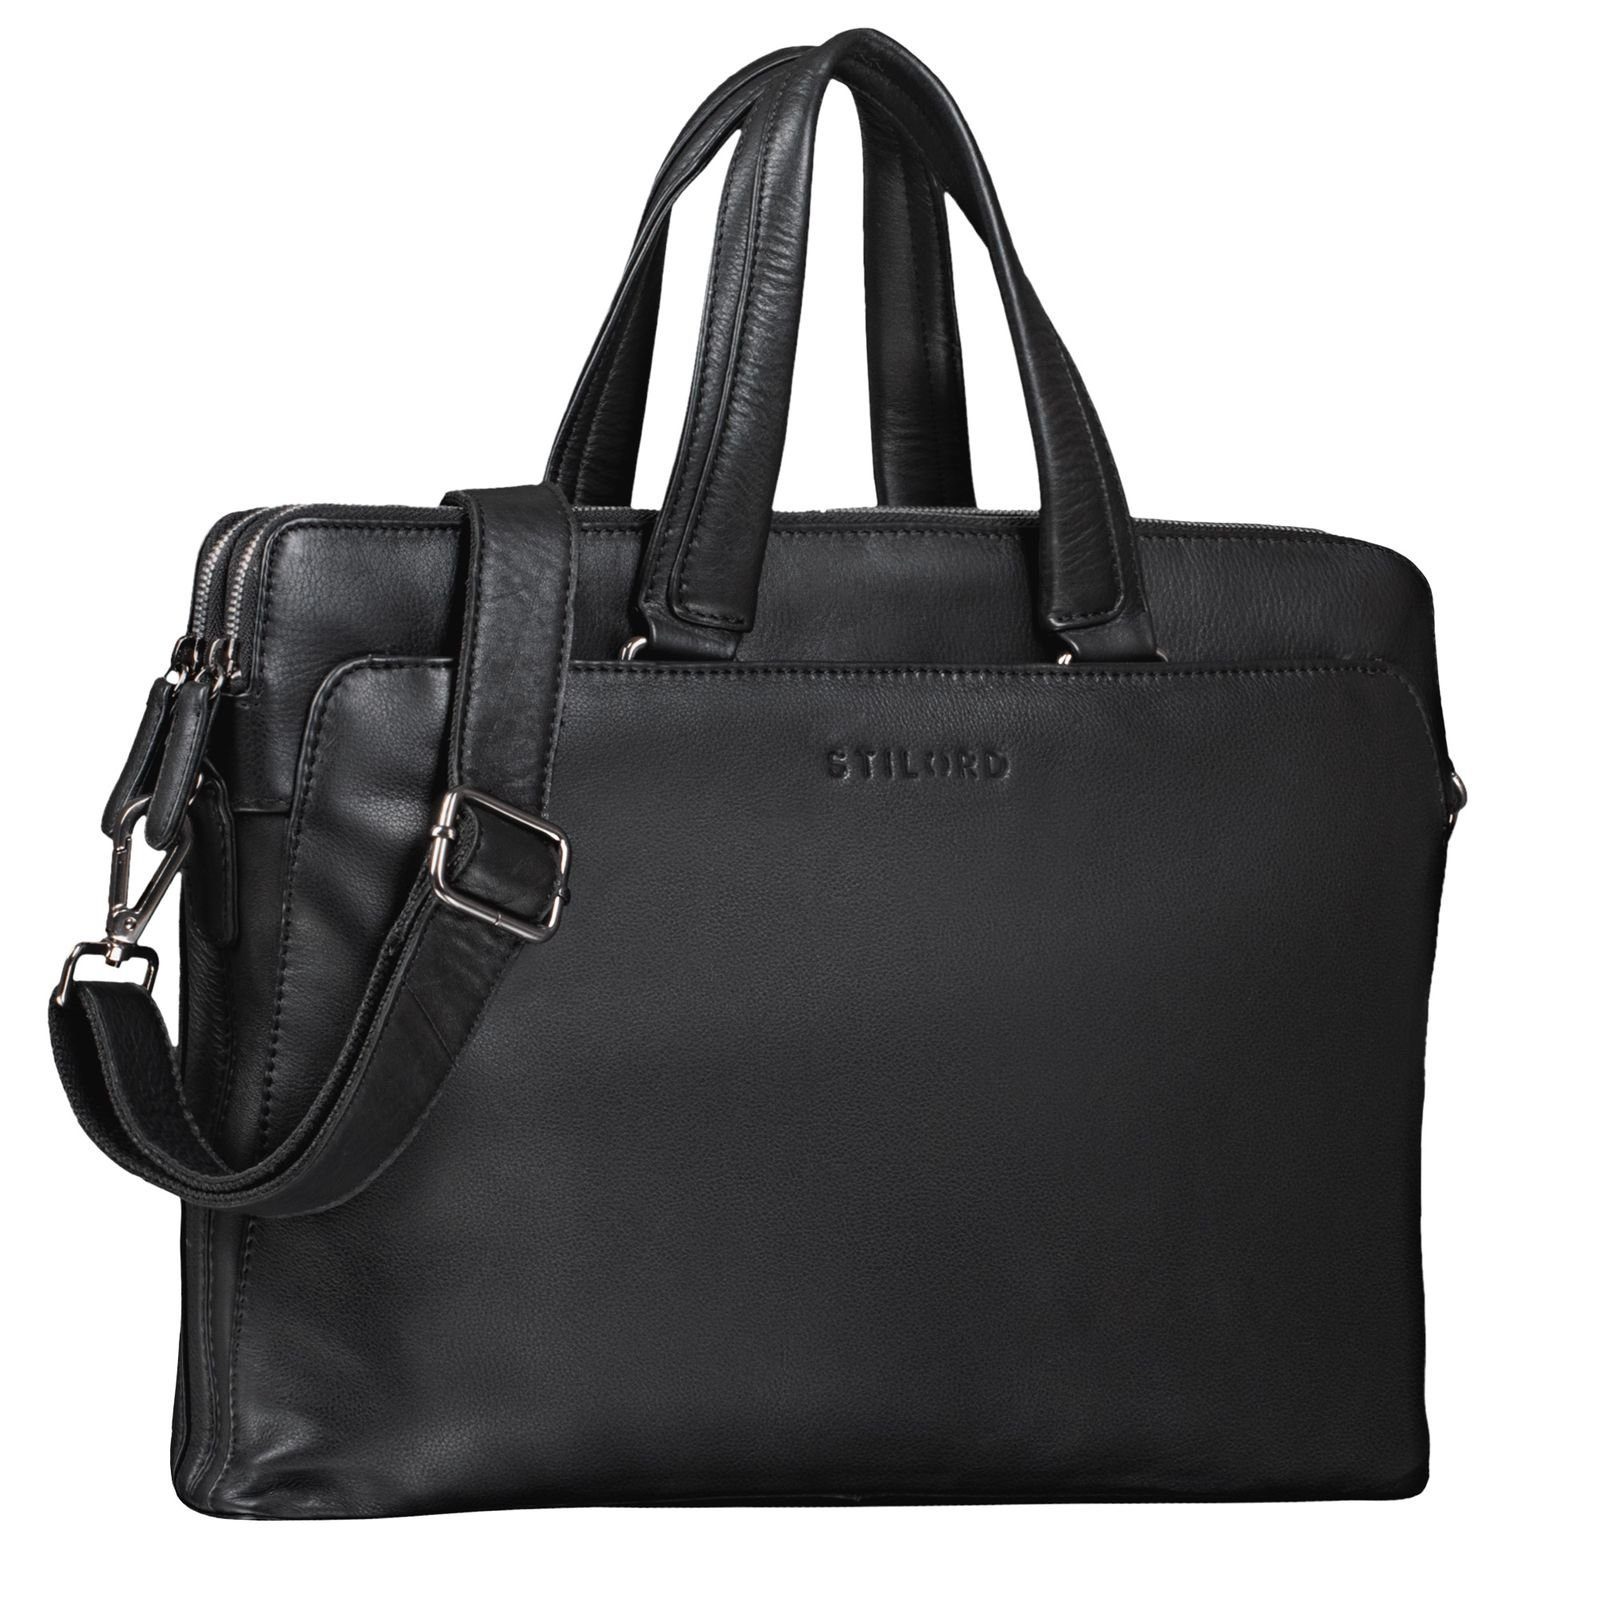 STILORD Handtasche "Kylie" Business Ledertasche Damen schwarz | Handtaschen